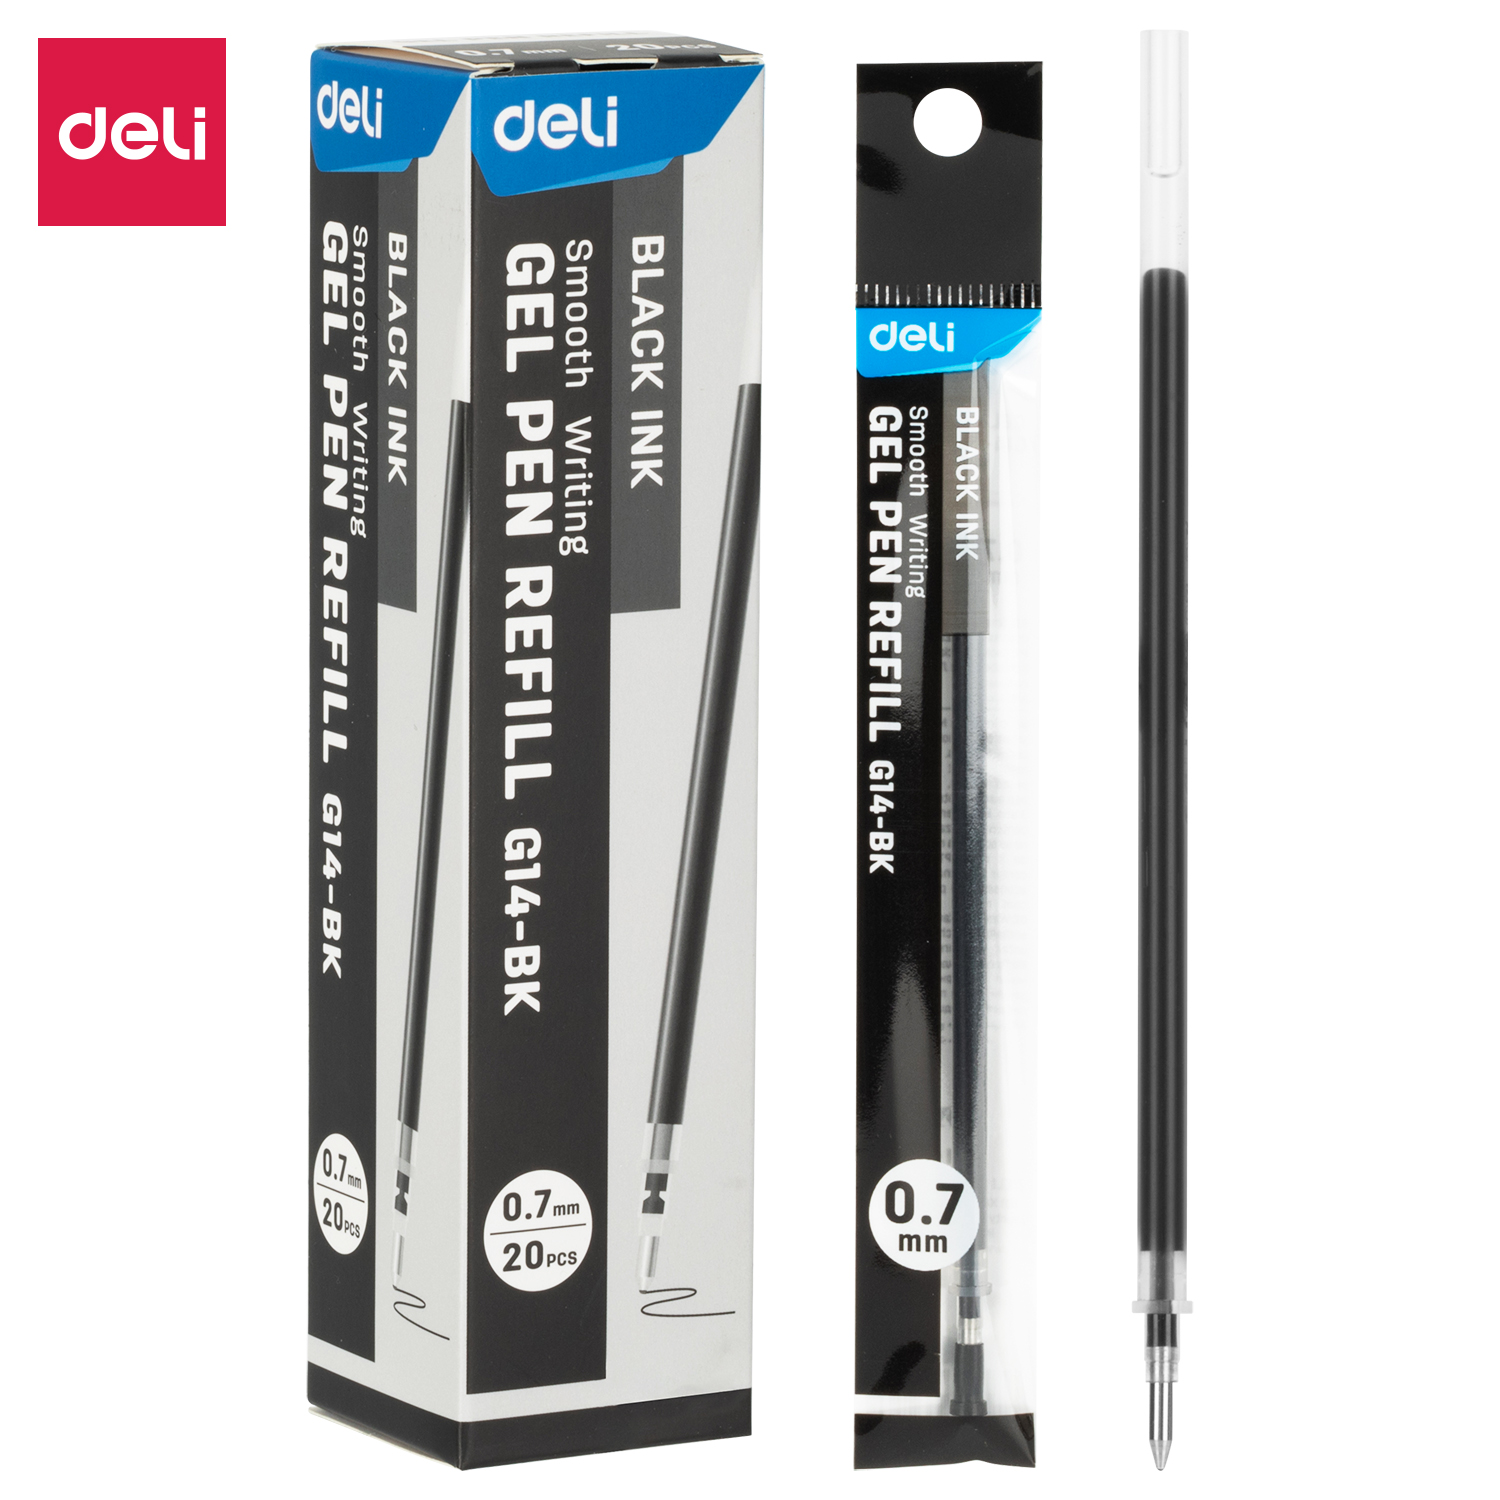 Deli-EG14-BK Gel Pen Refill